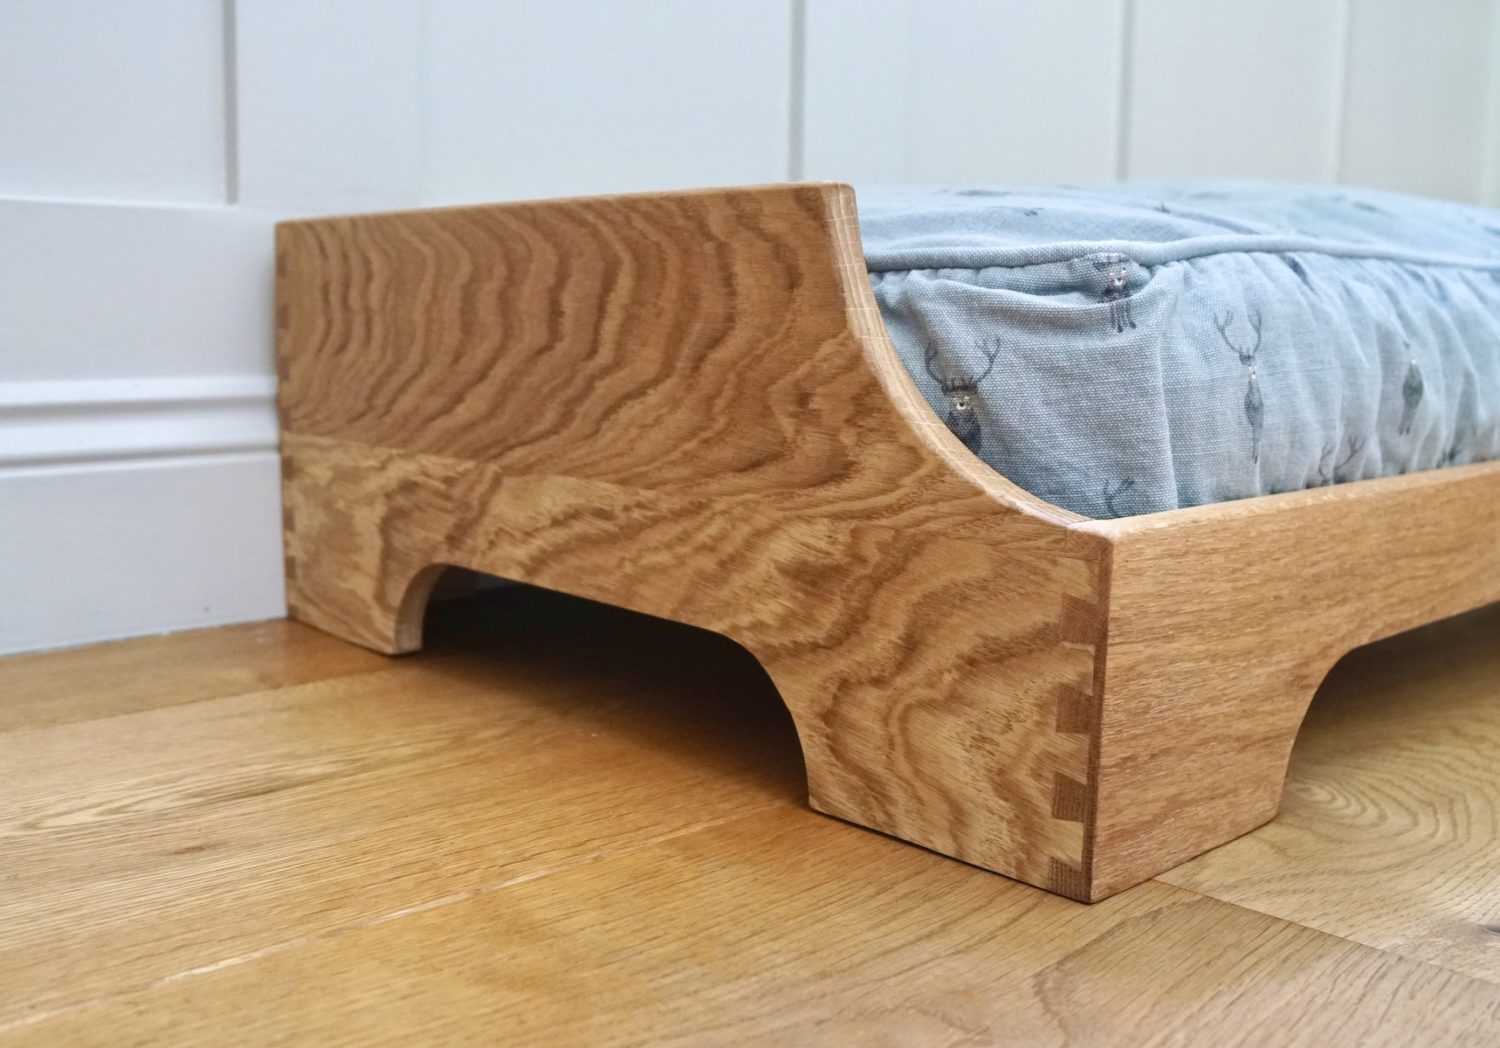 engraved-wooden-dog-bed